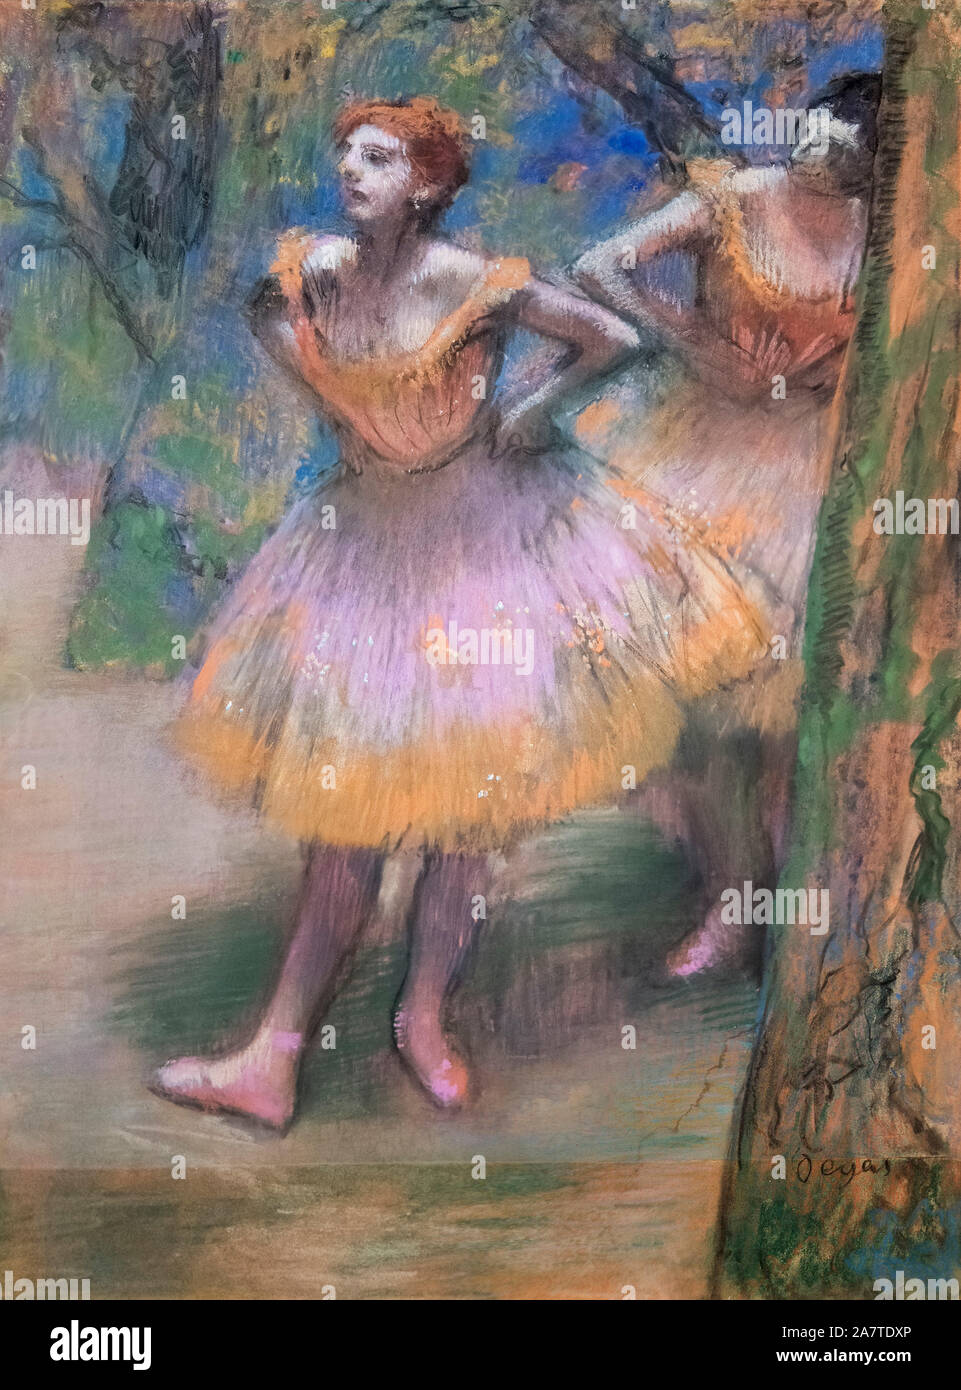 Zwei Tänzer von Edgar Degas (1834-1917), Pastell, Kohle, mit stumping und Brünieren, auf Transparentpapier, zusammengesetzt und auf Karton gelegt, c 1893 - 95 Stockfoto